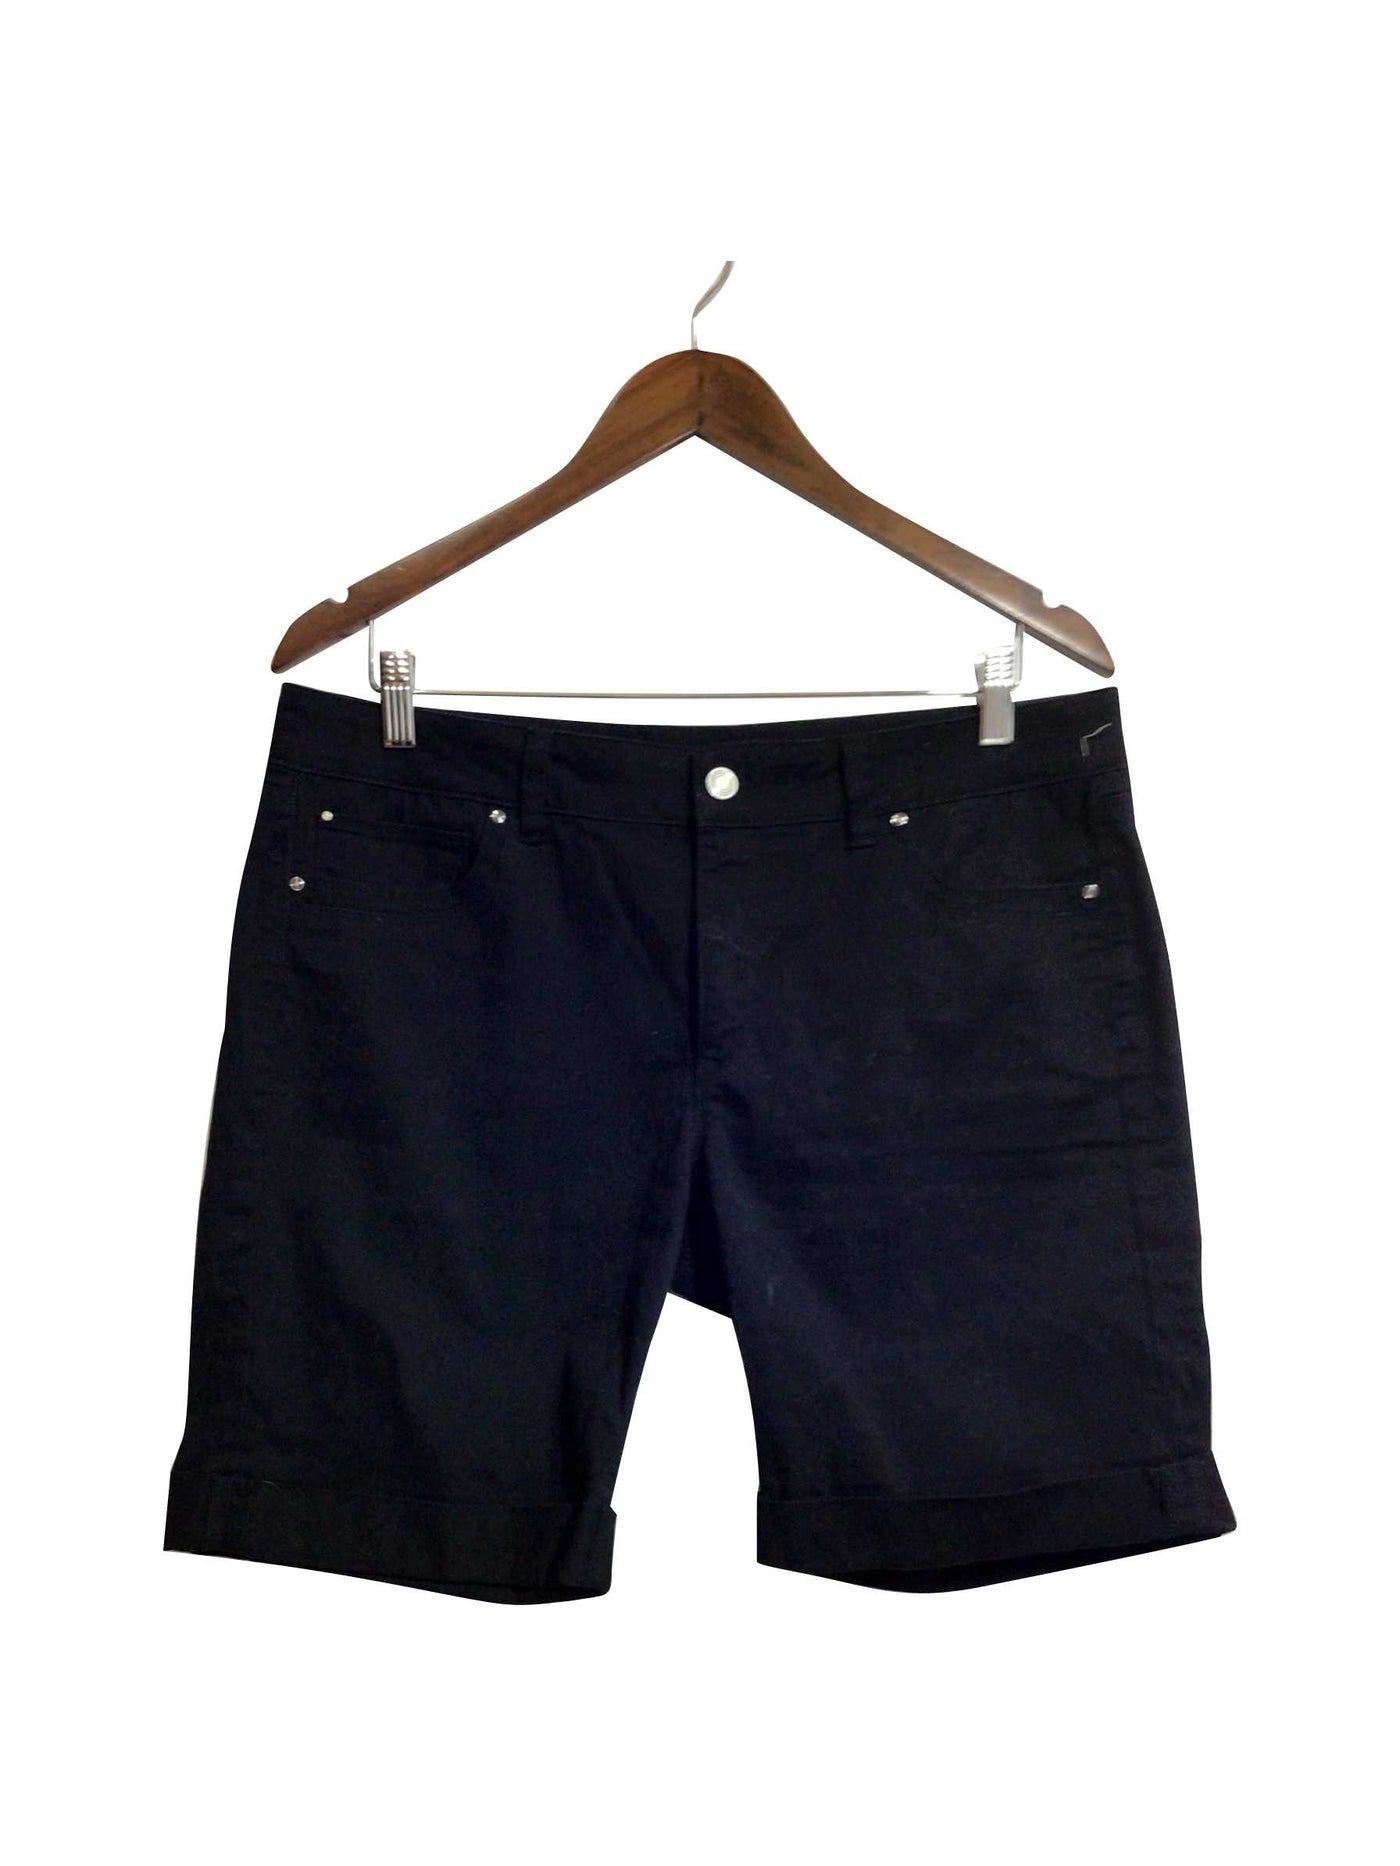 WHITE HOUSE BLACK MARKET Regular fit Jeans Shorts in Black - Size 12 | 6 $ KOOP